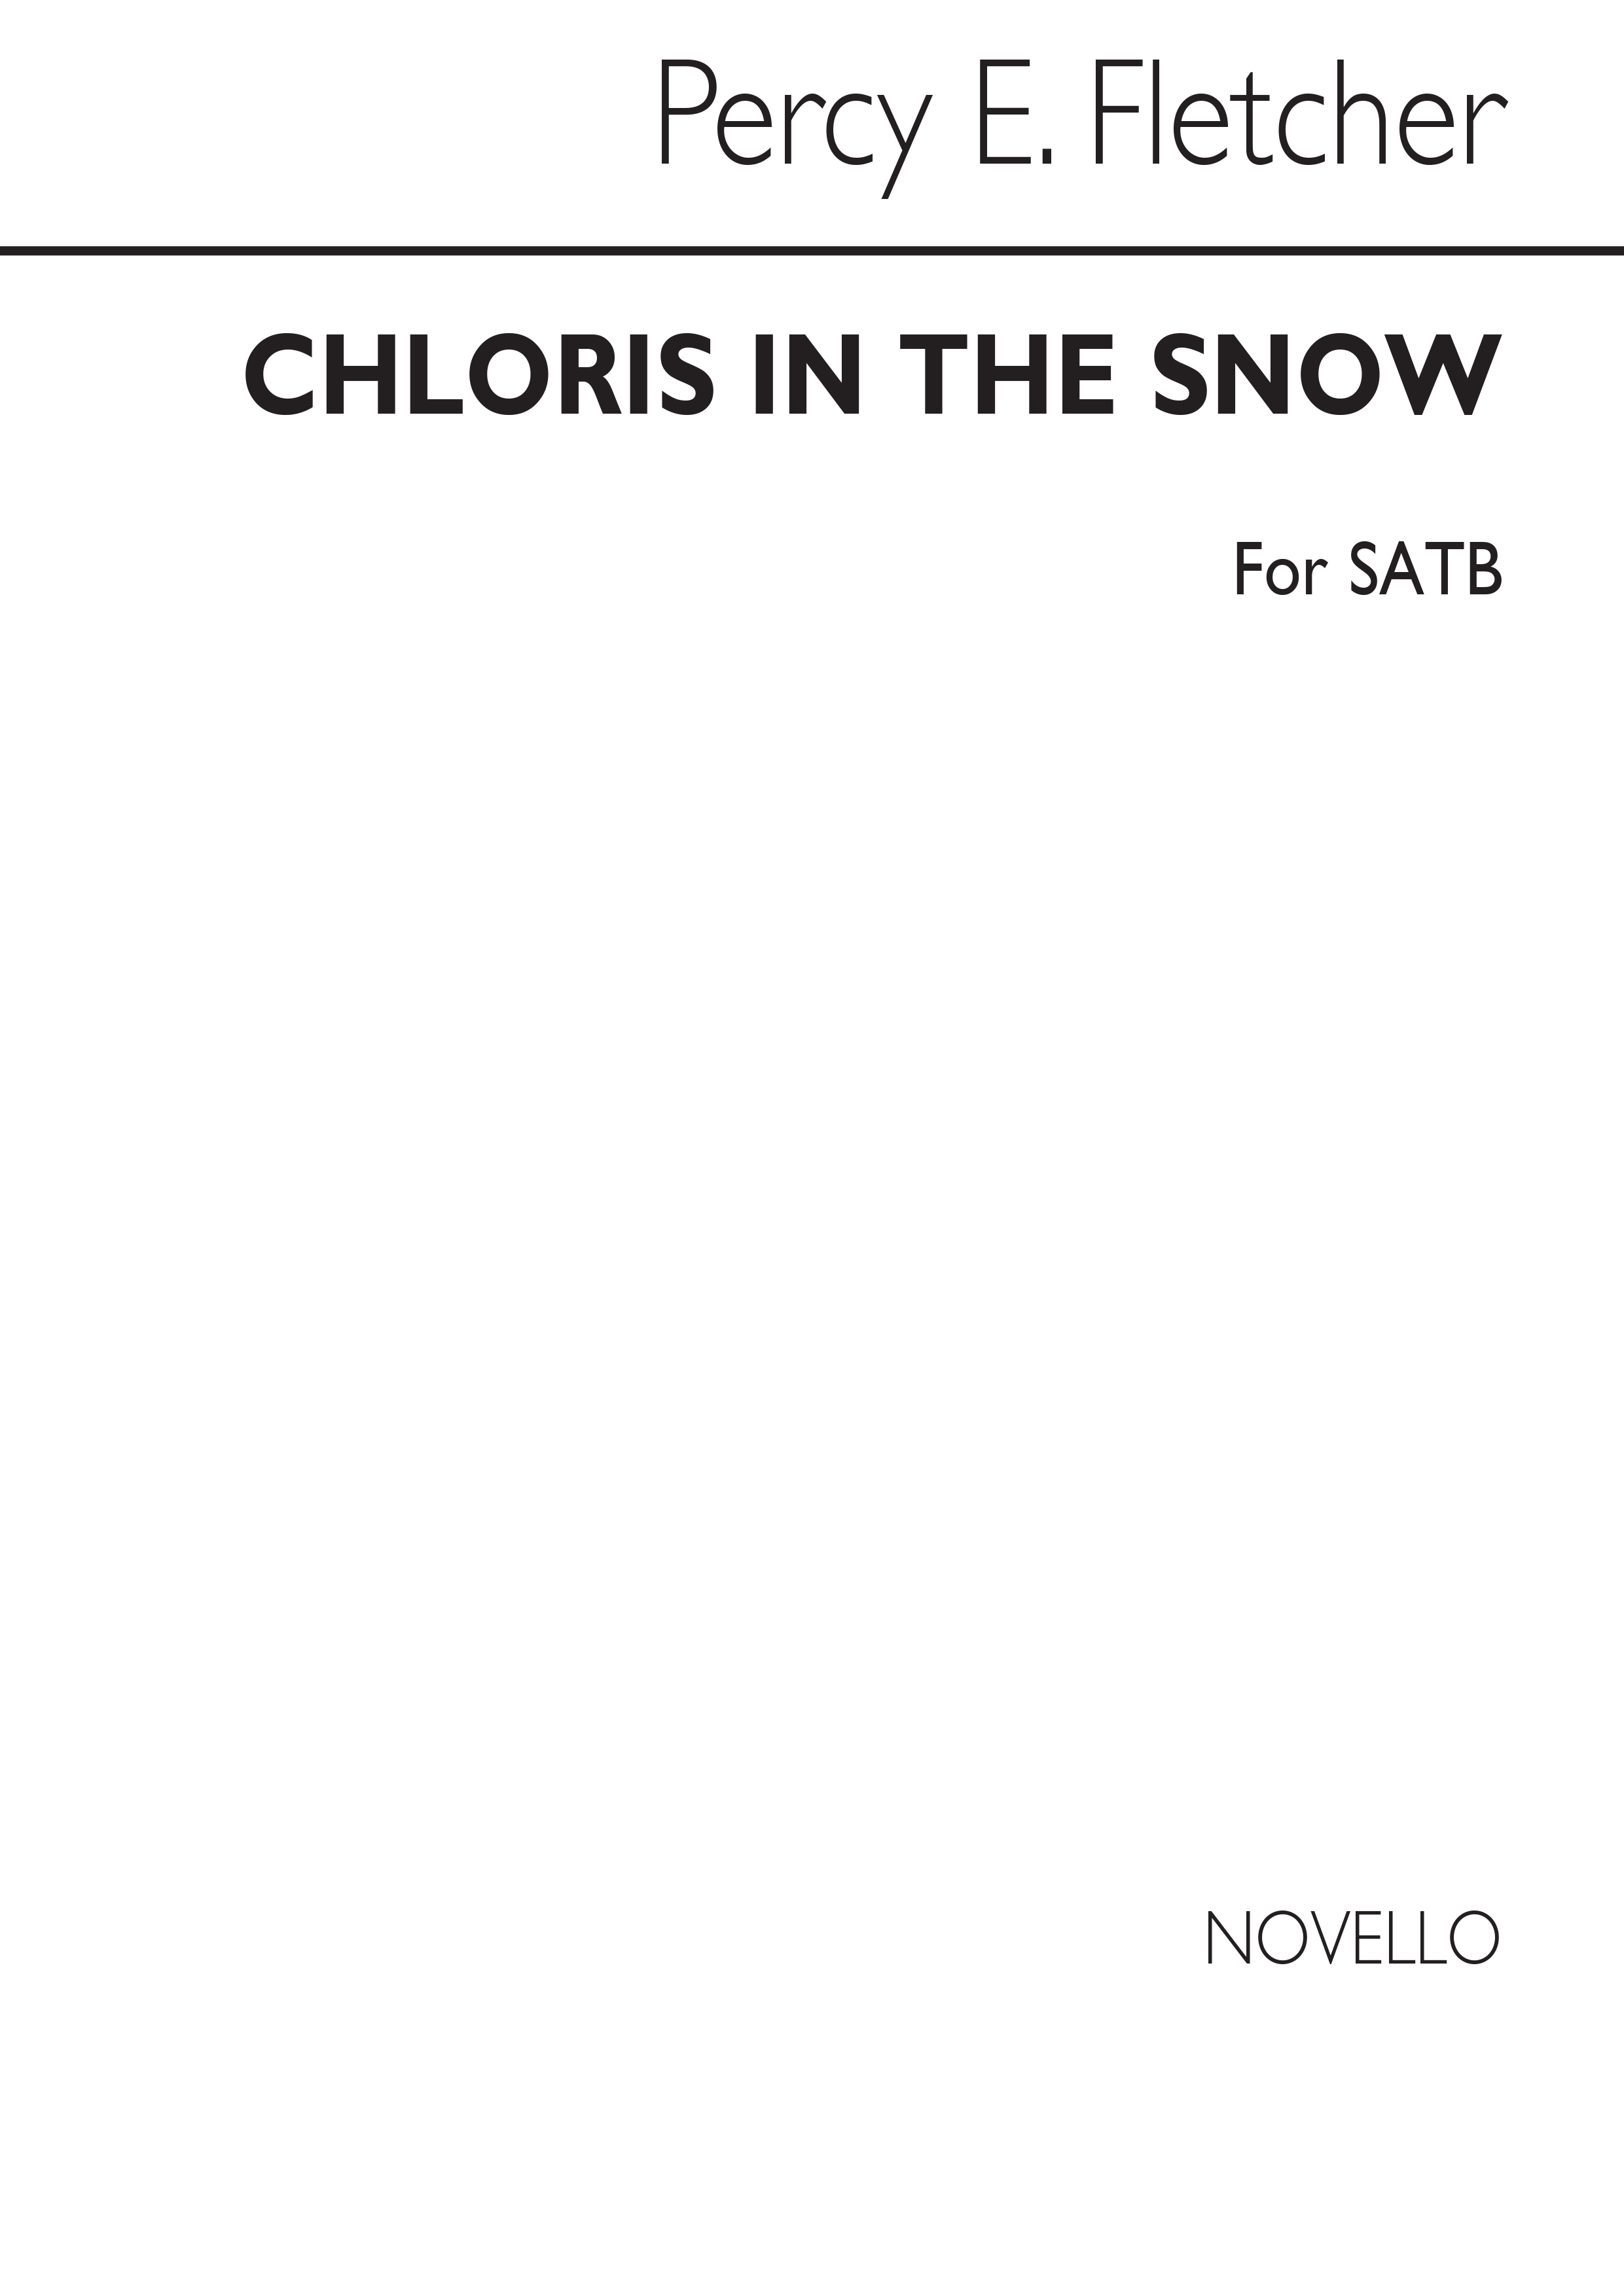 Percy E. Fletcher: Chloris In The Snow: SATB: Vocal Score